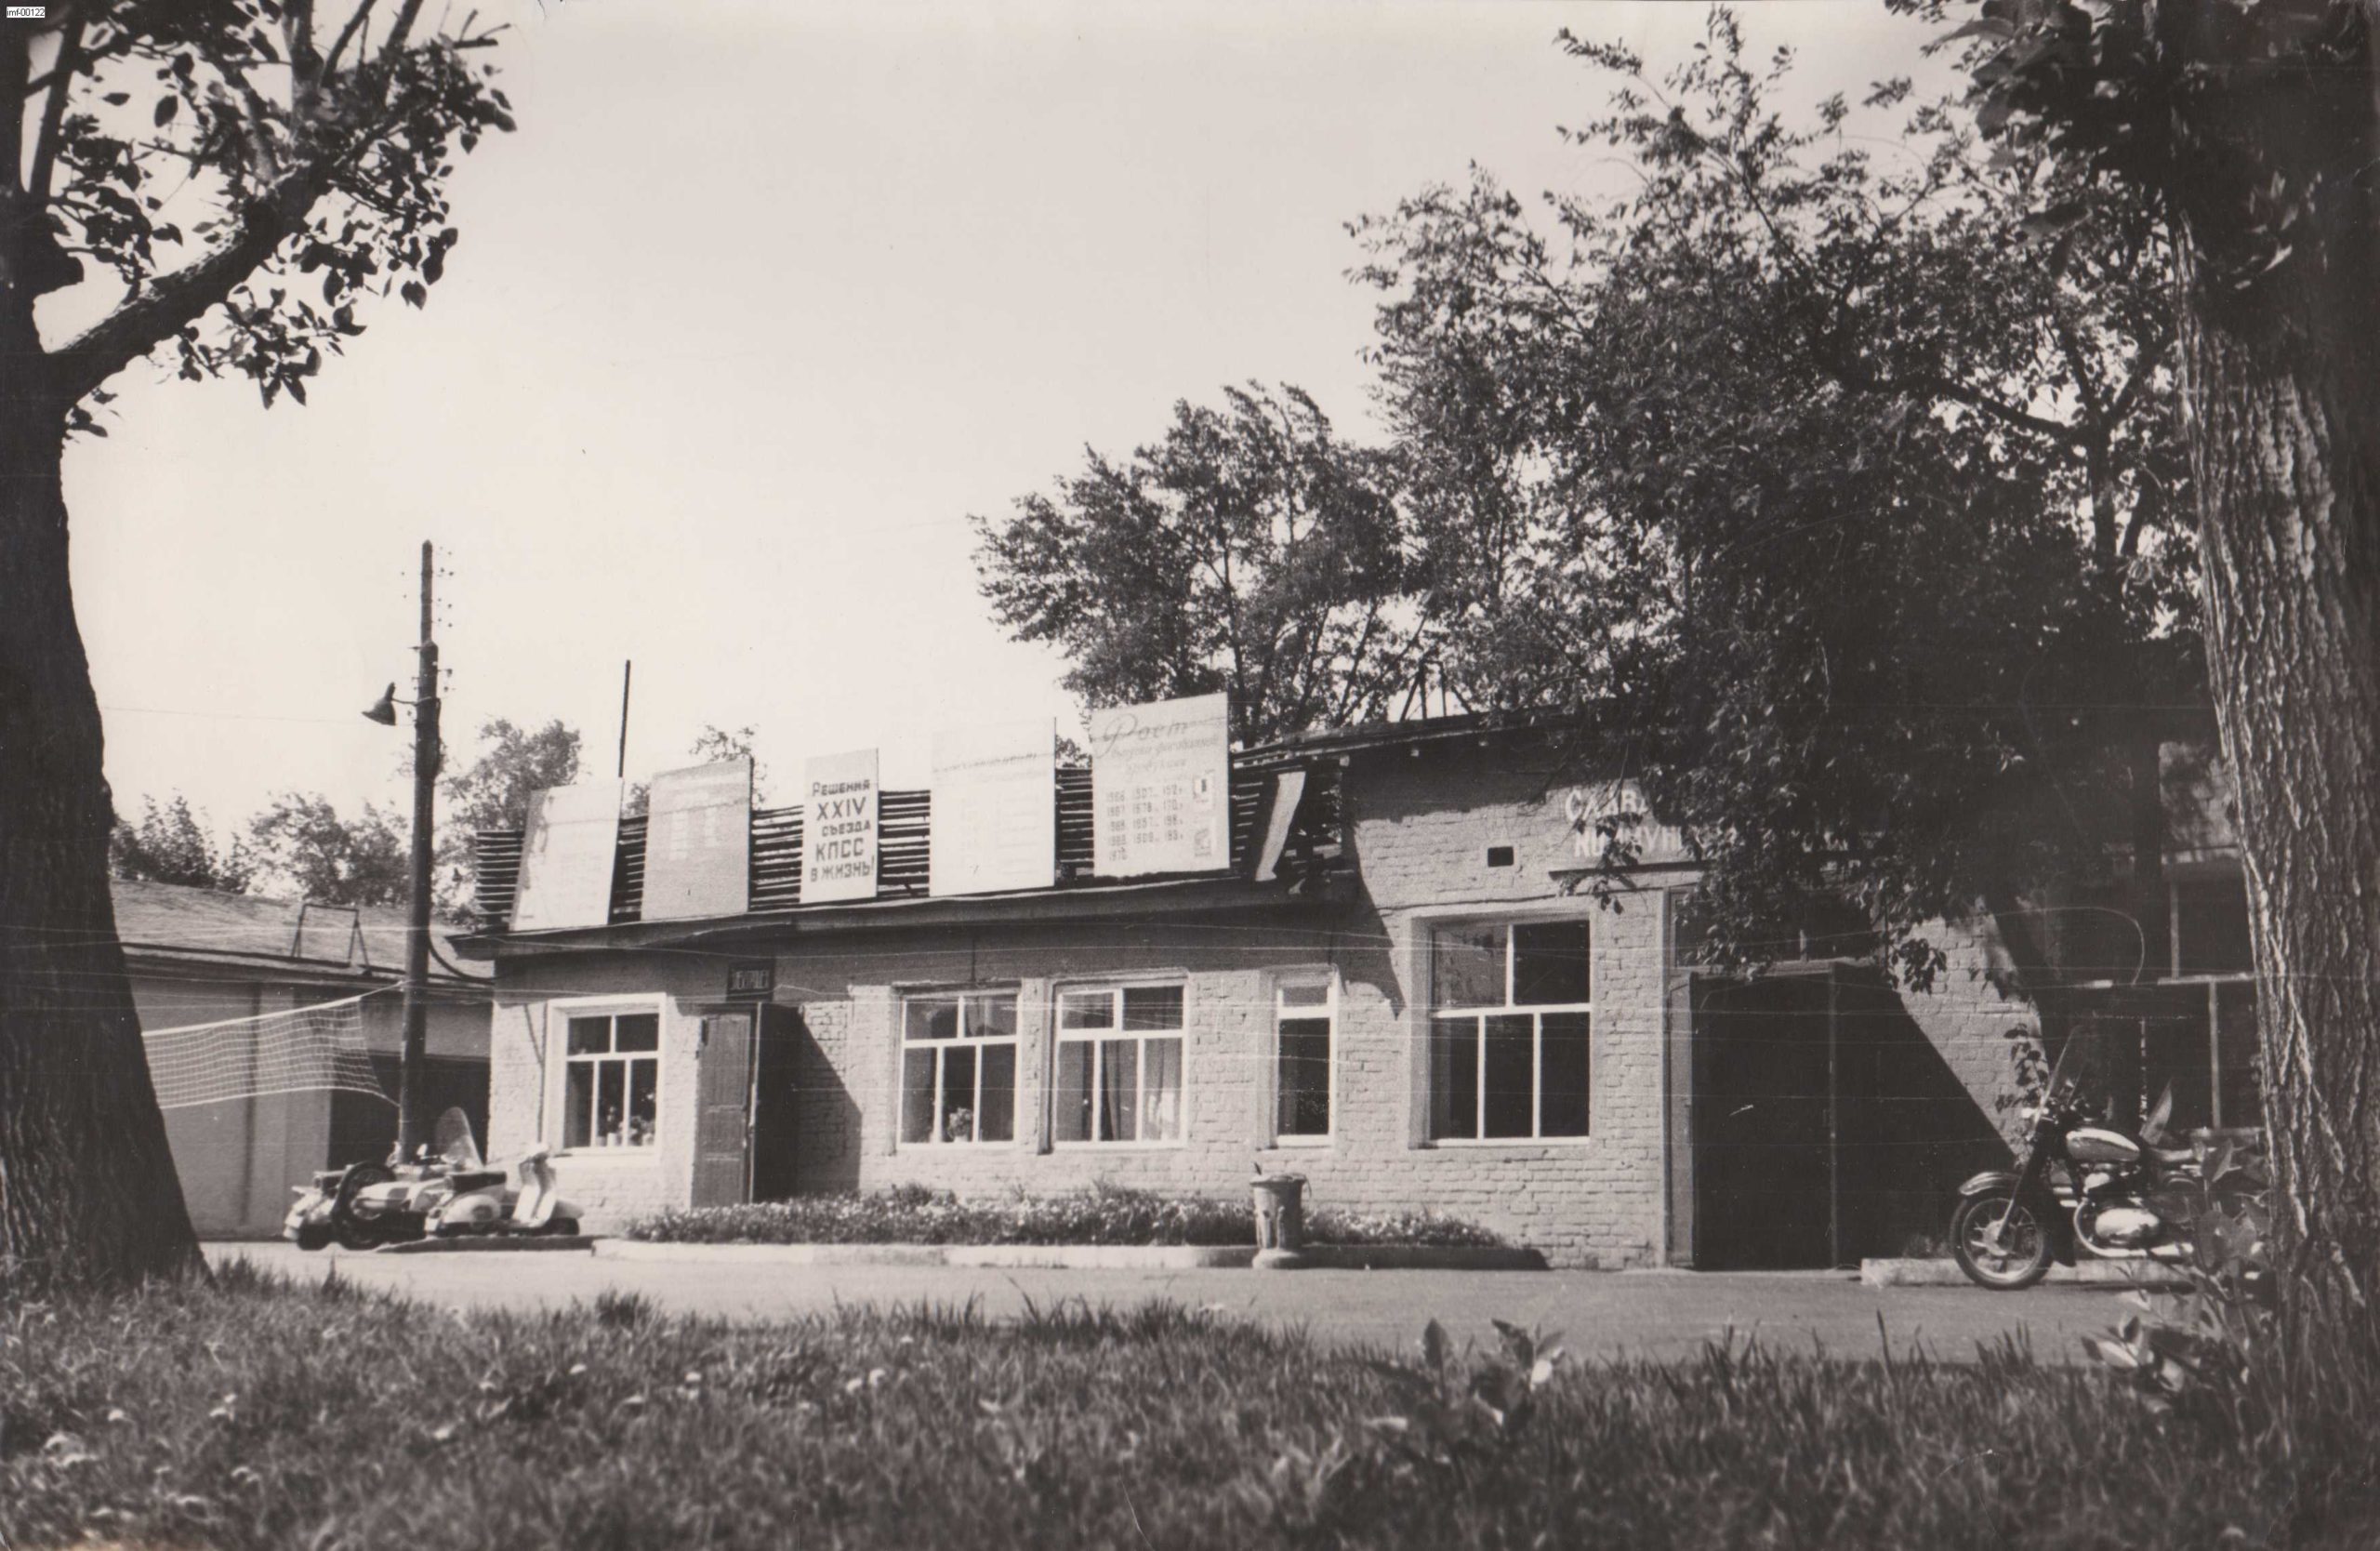 Иркутская макаронная фабрика в 60-70 годы.